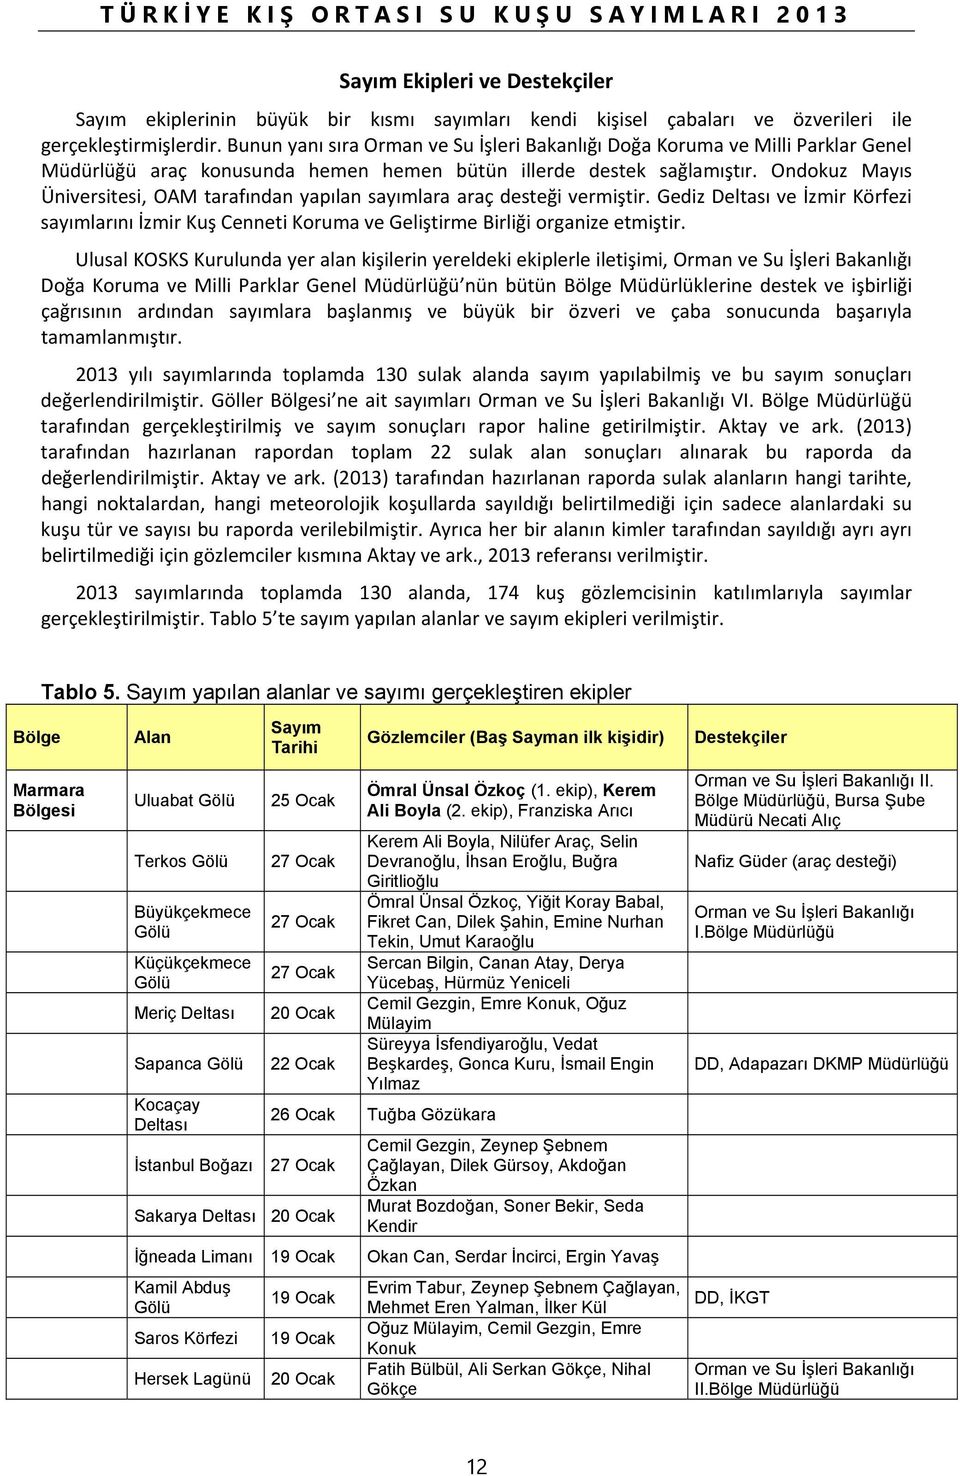 Ondokuz Mayıs Üniversitesi, OAM tarafından yapılan sayımlara araç desteği vermiştir. Gediz ve İzmir Körfezi sayımlarını İzmir Kuş Cenneti Koruma ve Geliştirme Birliği organize etmiştir.